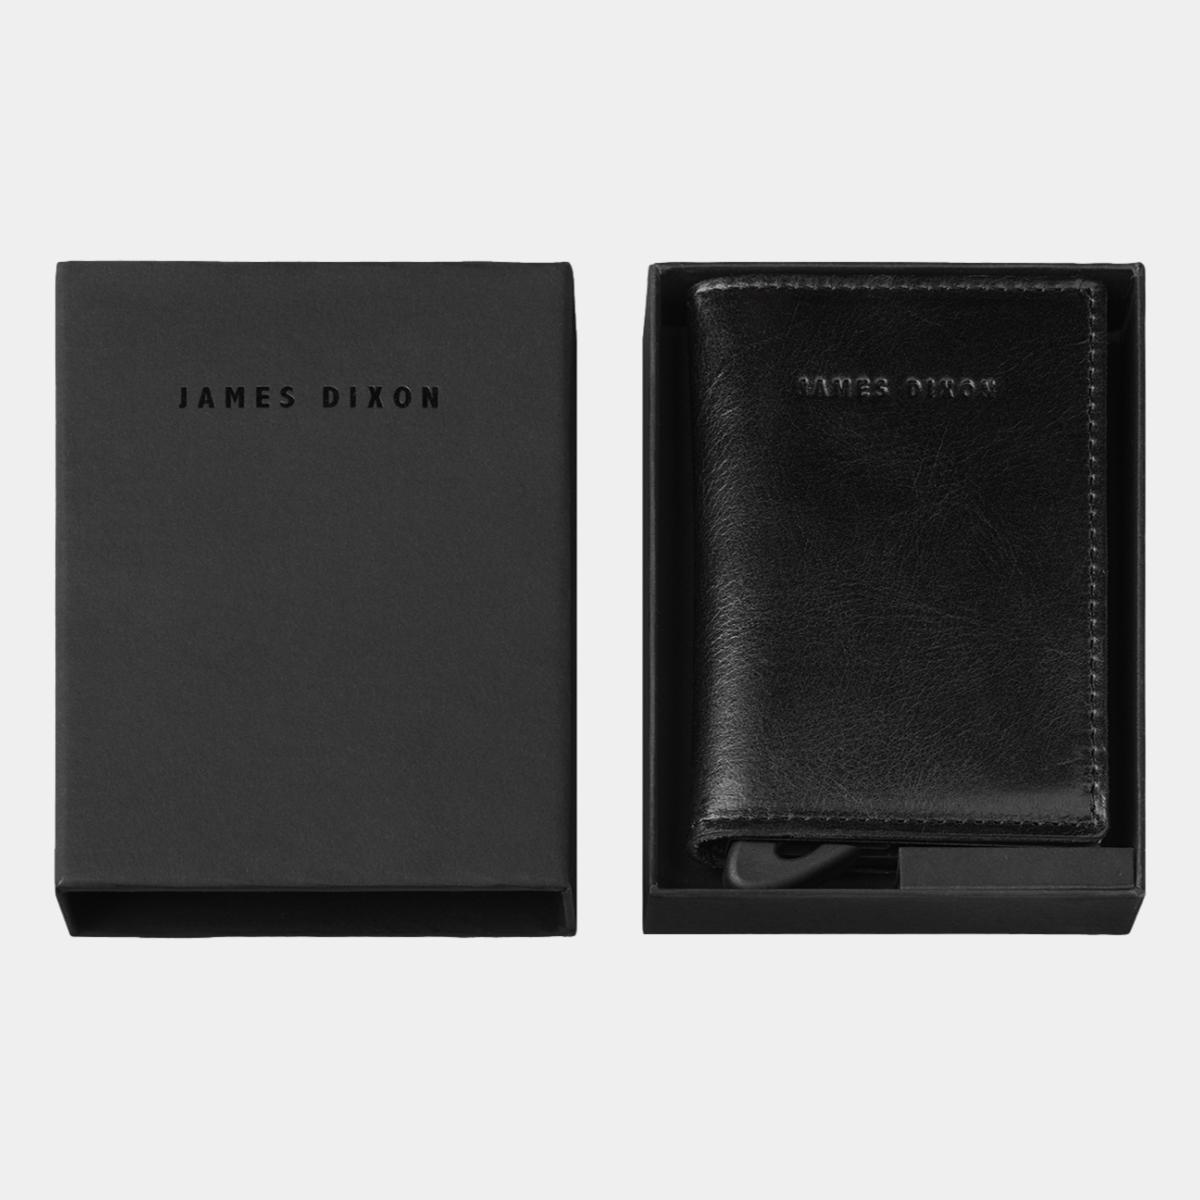 jd0223 james dixon puro classic black devil red coin pocket wallet box